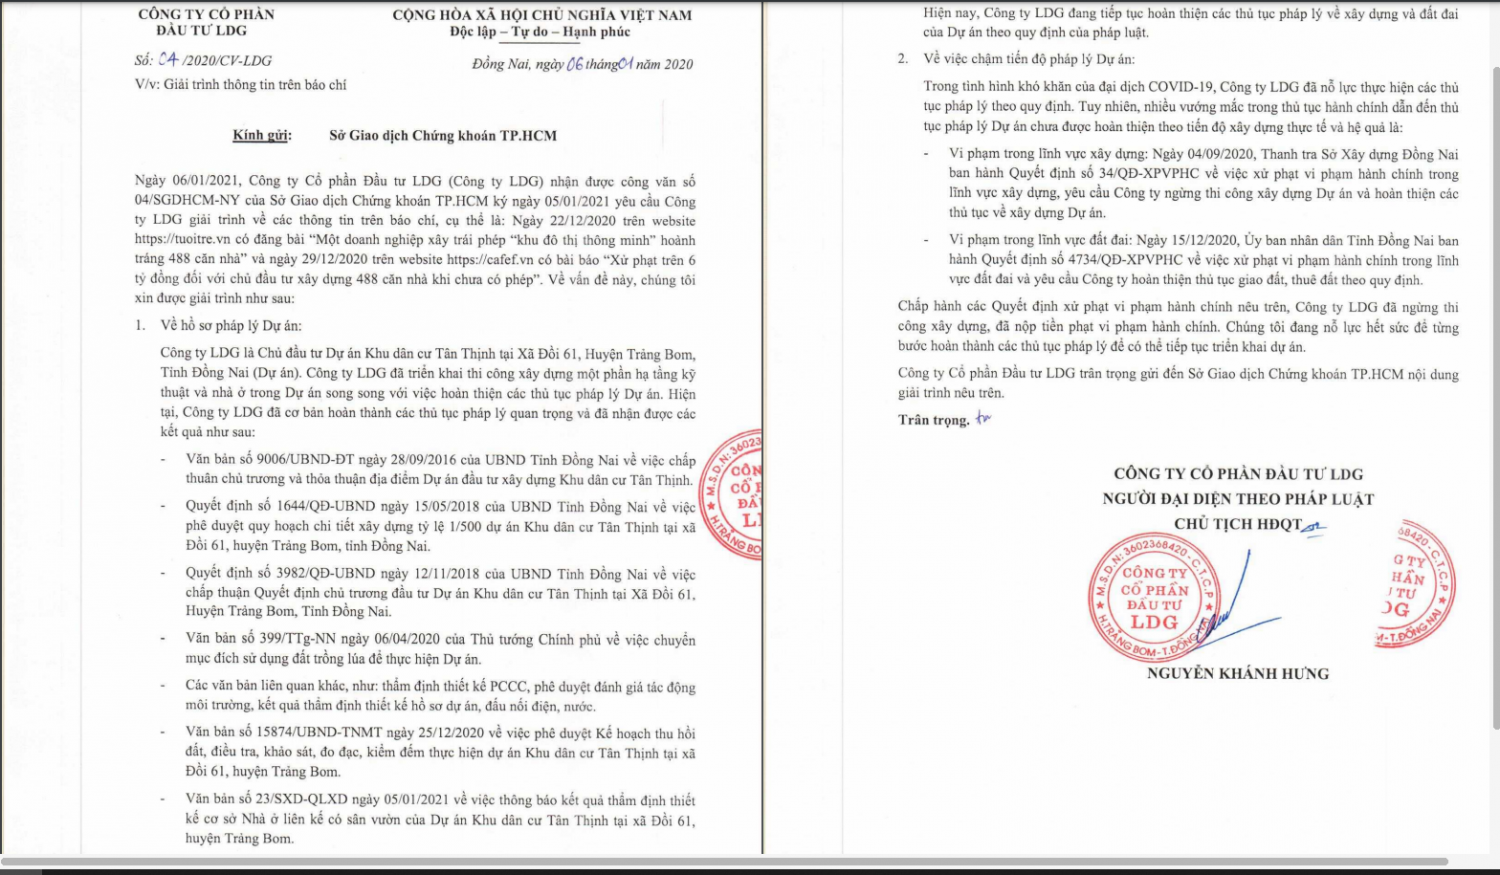 Văn bản giải trình của LDG liên quan đến sai phạm tại dự án Khu dân cư Tân Thịnh.